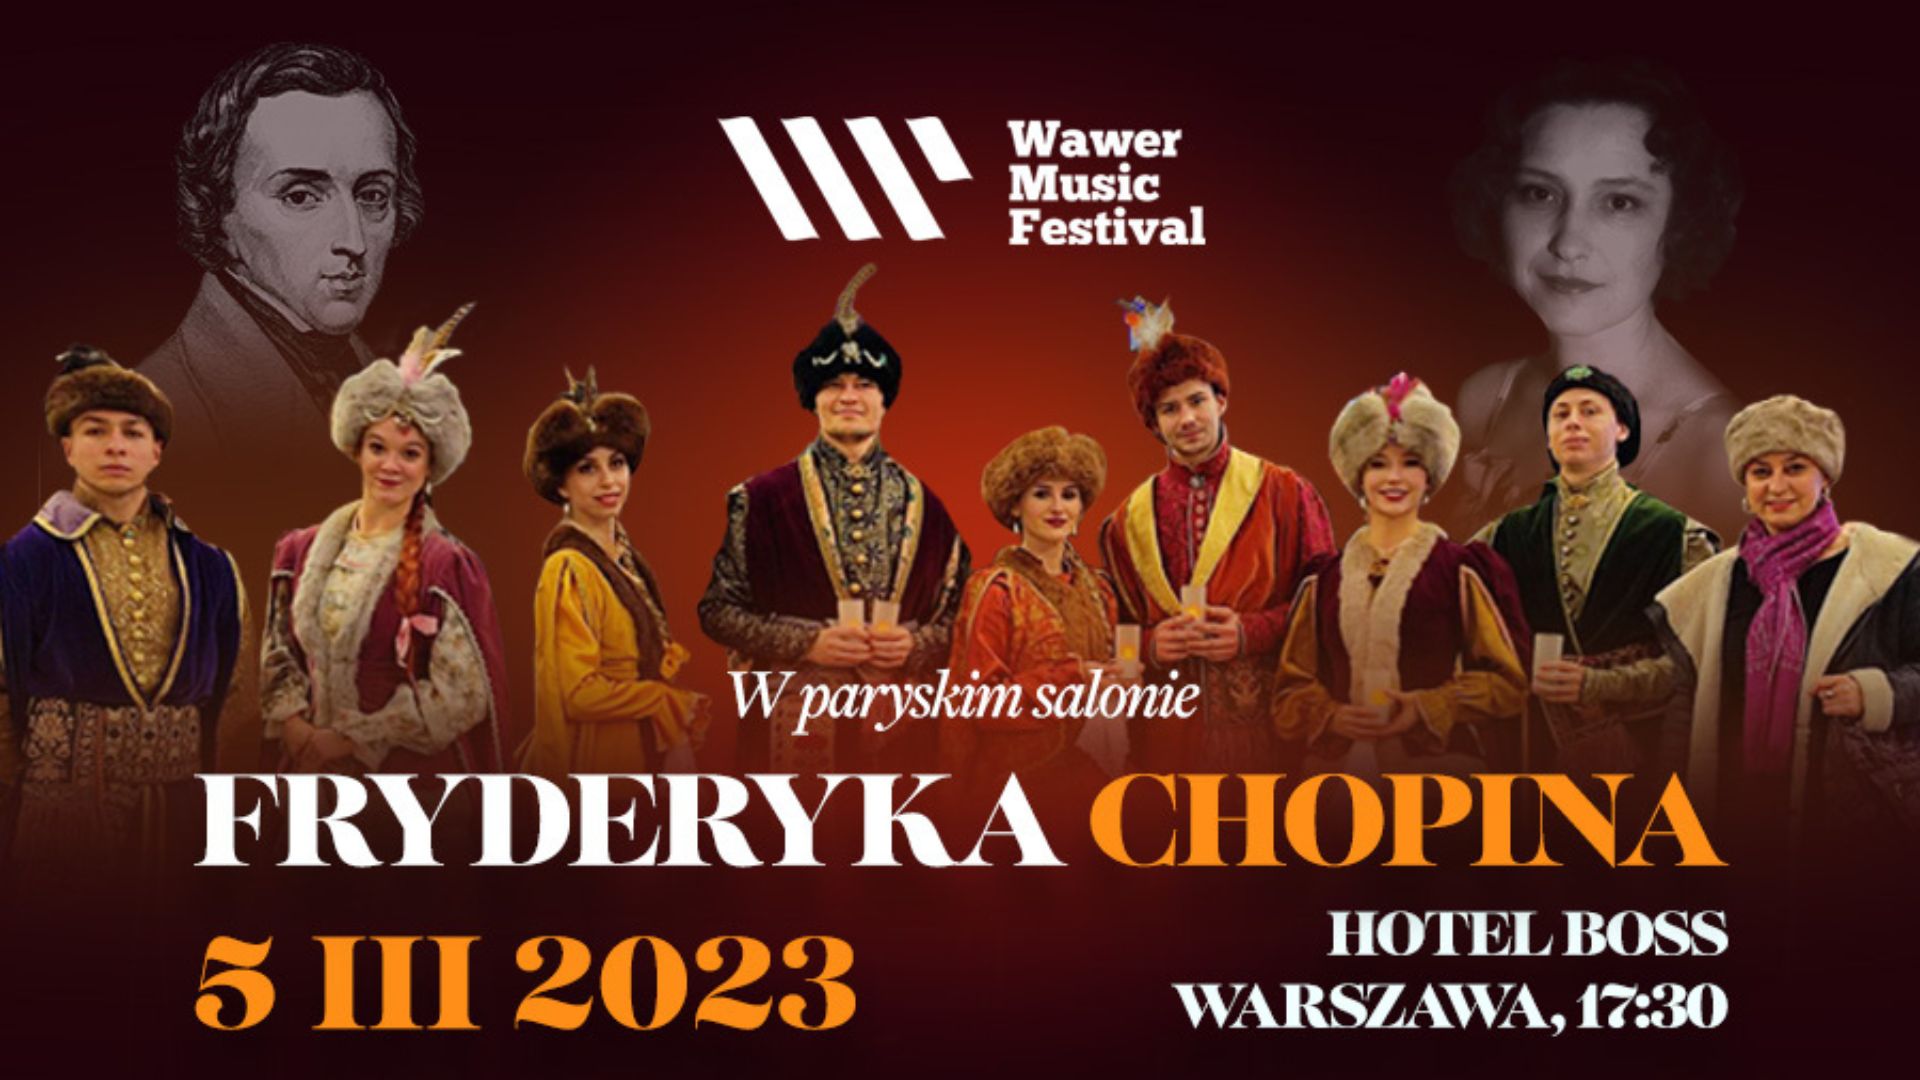 W paryskim salonie Fryderyka Chopina | Wawer Music Festival